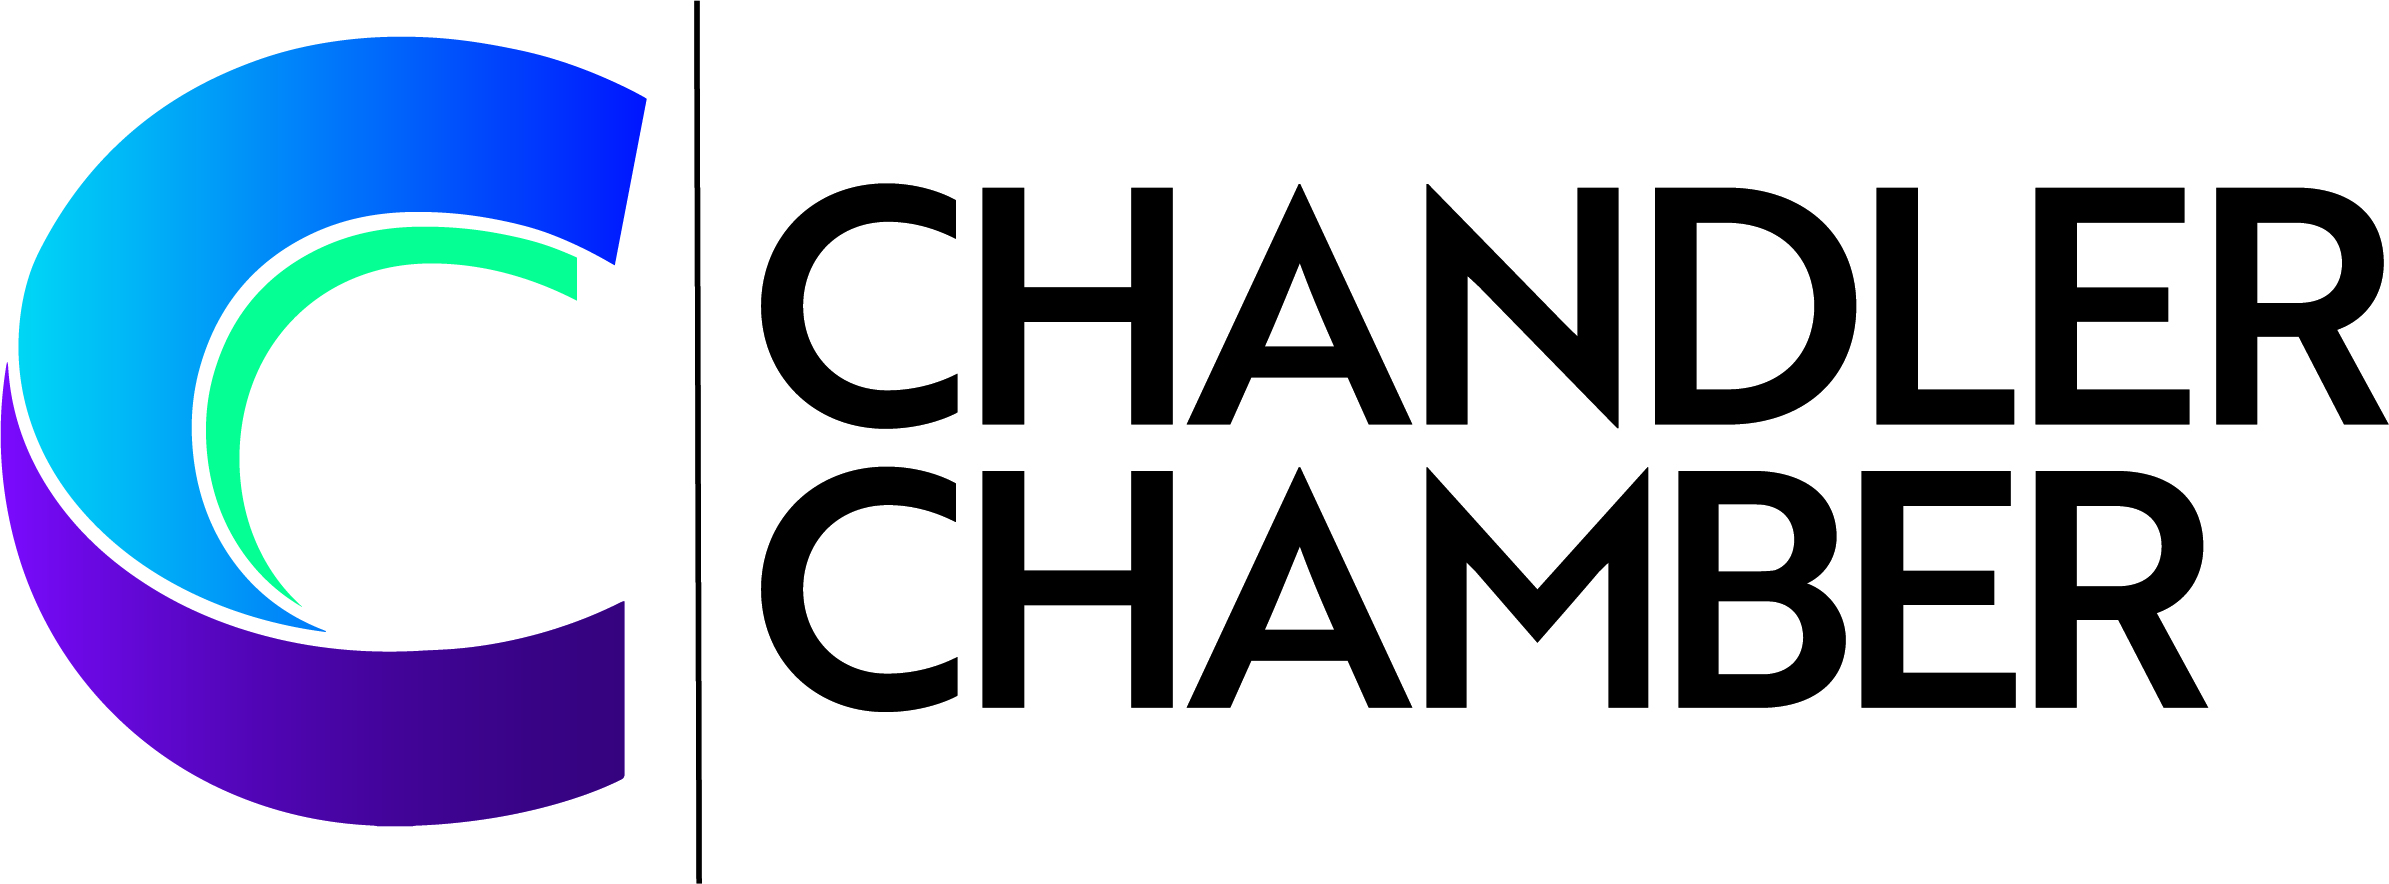 Chandler chamber photo